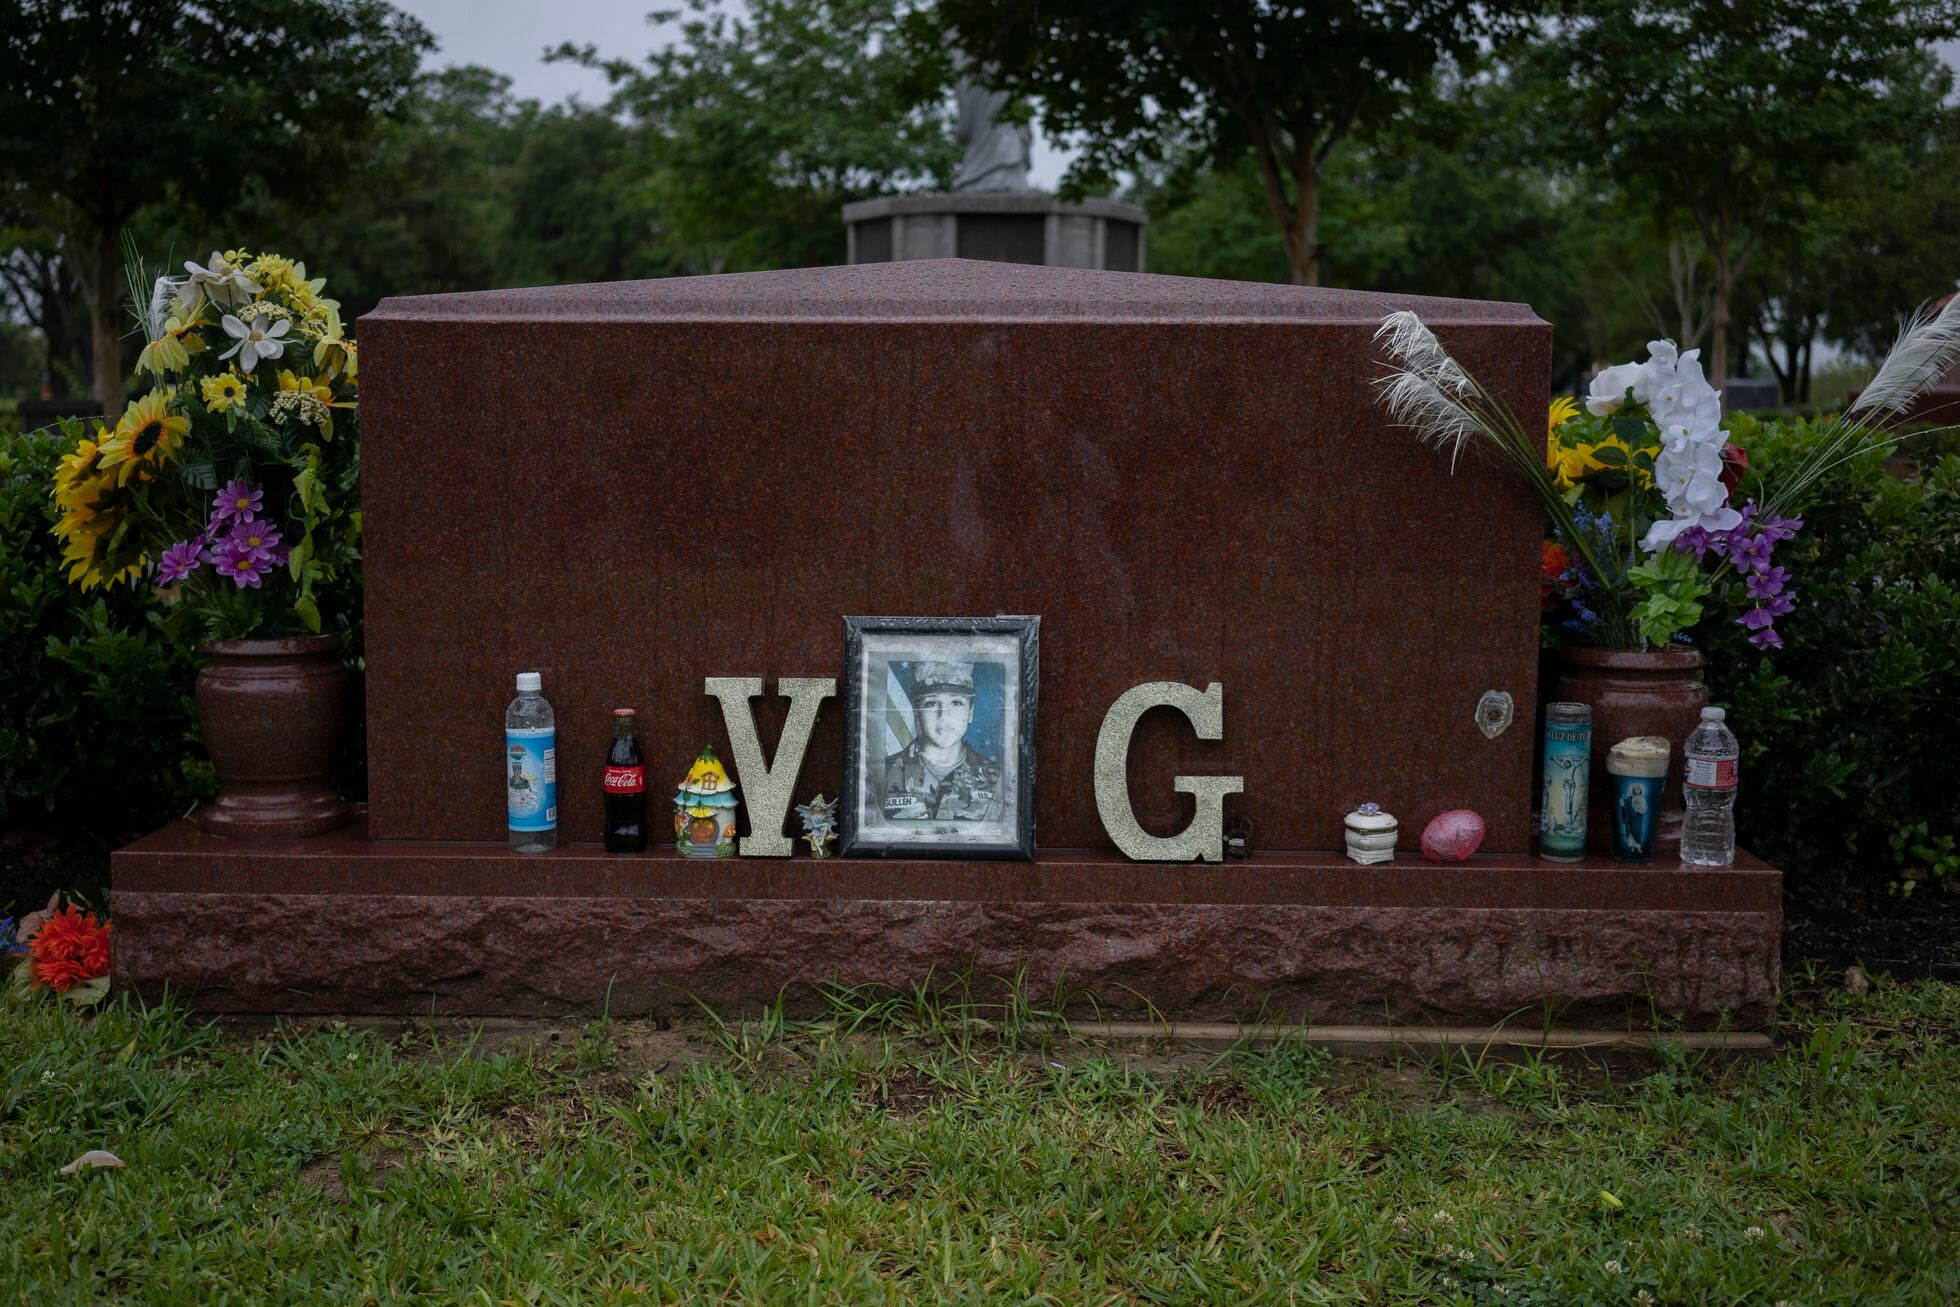 Los restos de Vanessa Guillén descansan en paz en el cementerio "Dignity Memorial en Houston".